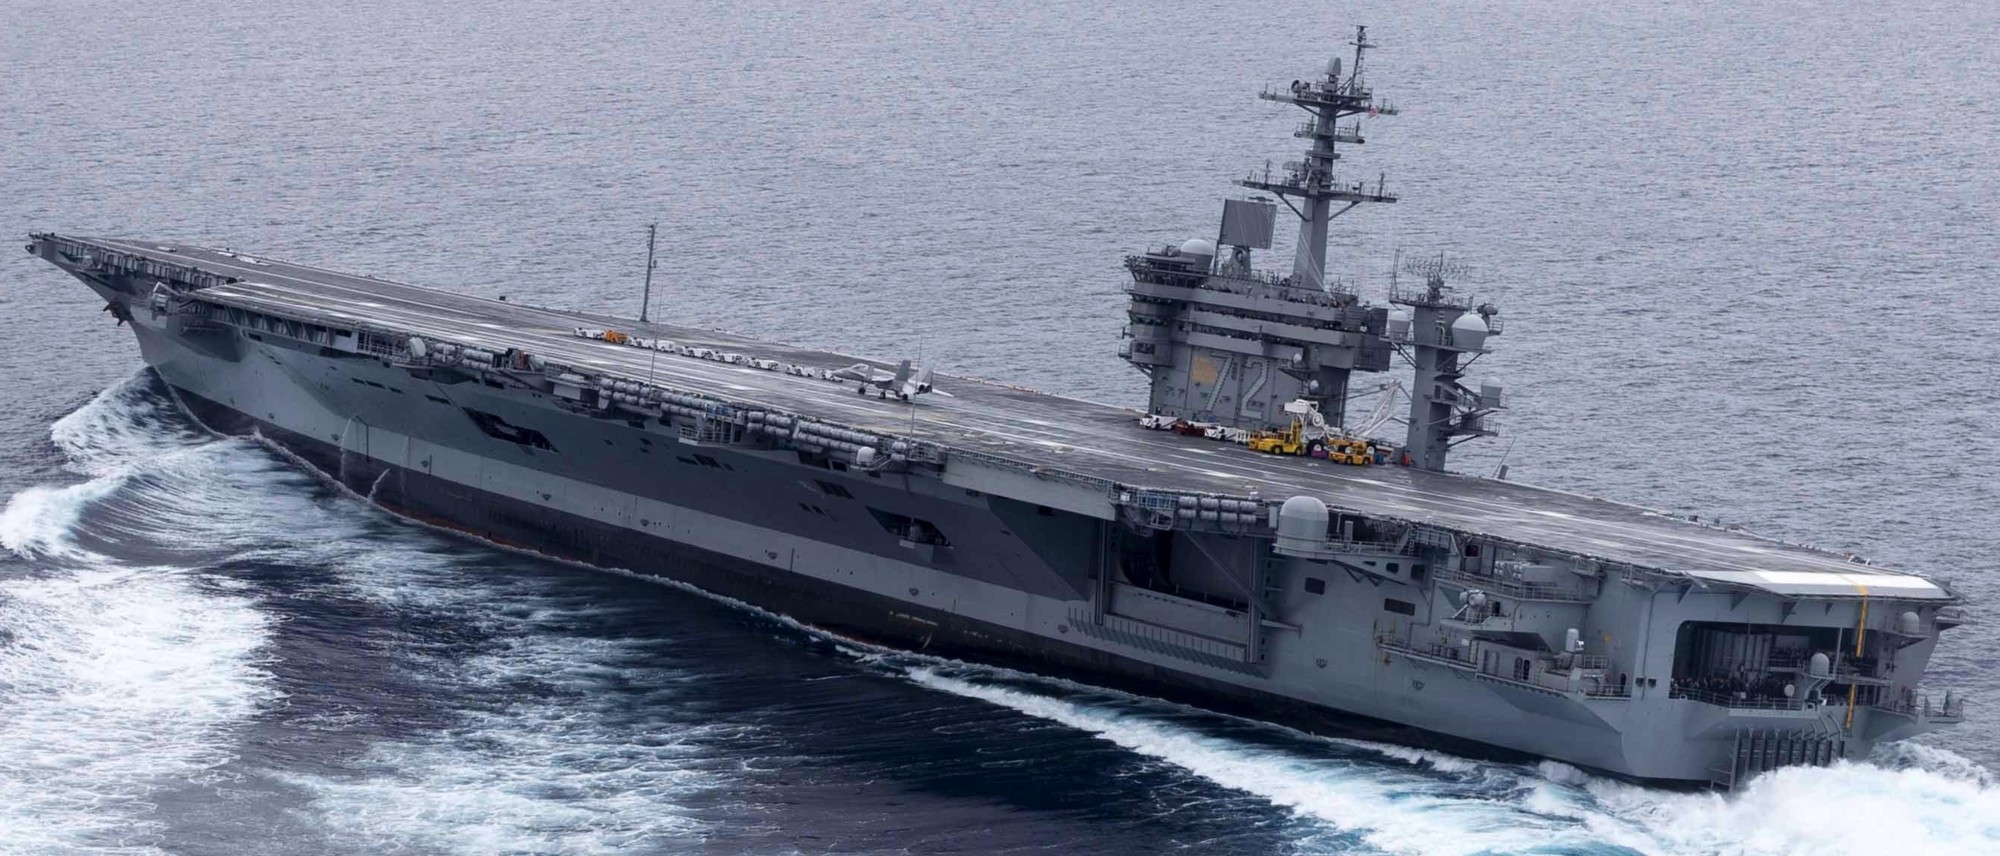 cvn-72 uss abraham lincoln nimitz class aircraft carrier us navy 50